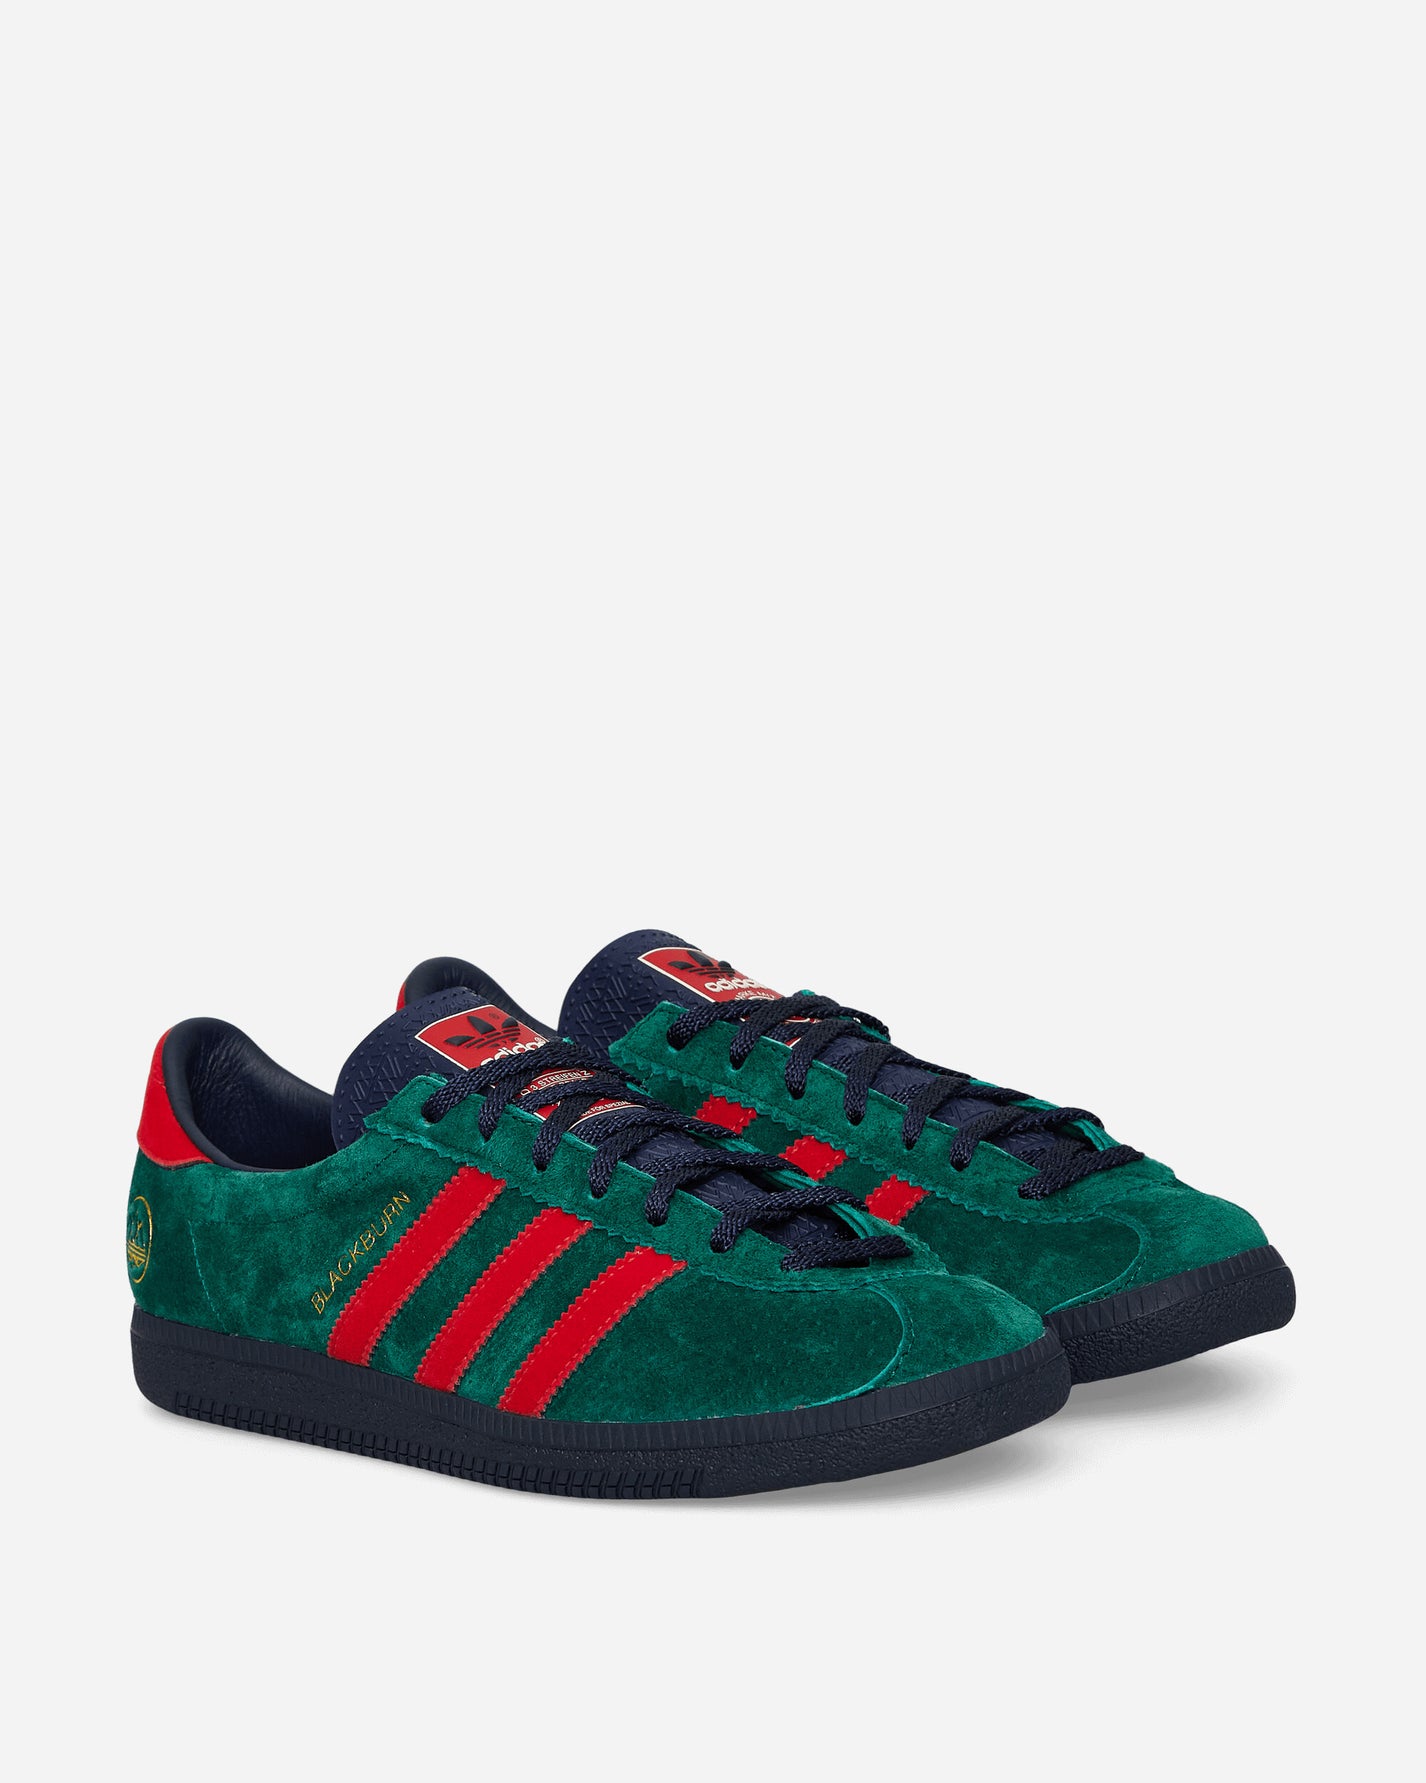 adidas Blackburn Spzl Collegiate Green/Scarlet Sneakers Low IH2139